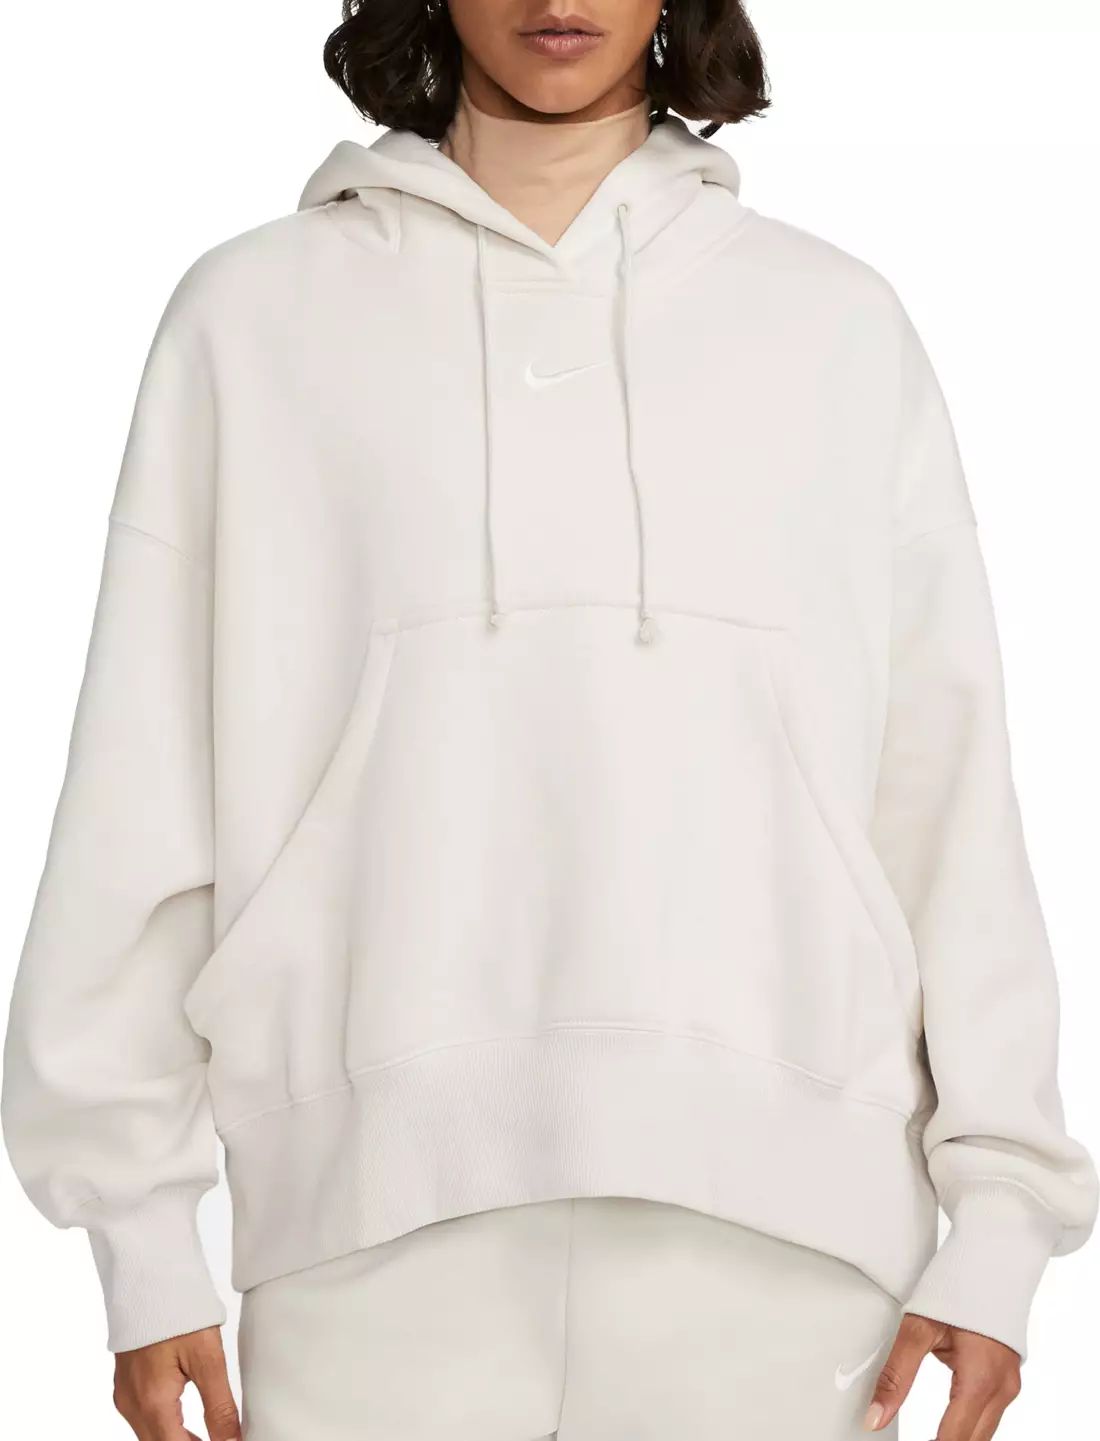 Nike Sportswear Women's Phoenix Fleece Over-Oversized Pullover Hoodie | Dick's Sporting Goods | Dick's Sporting Goods